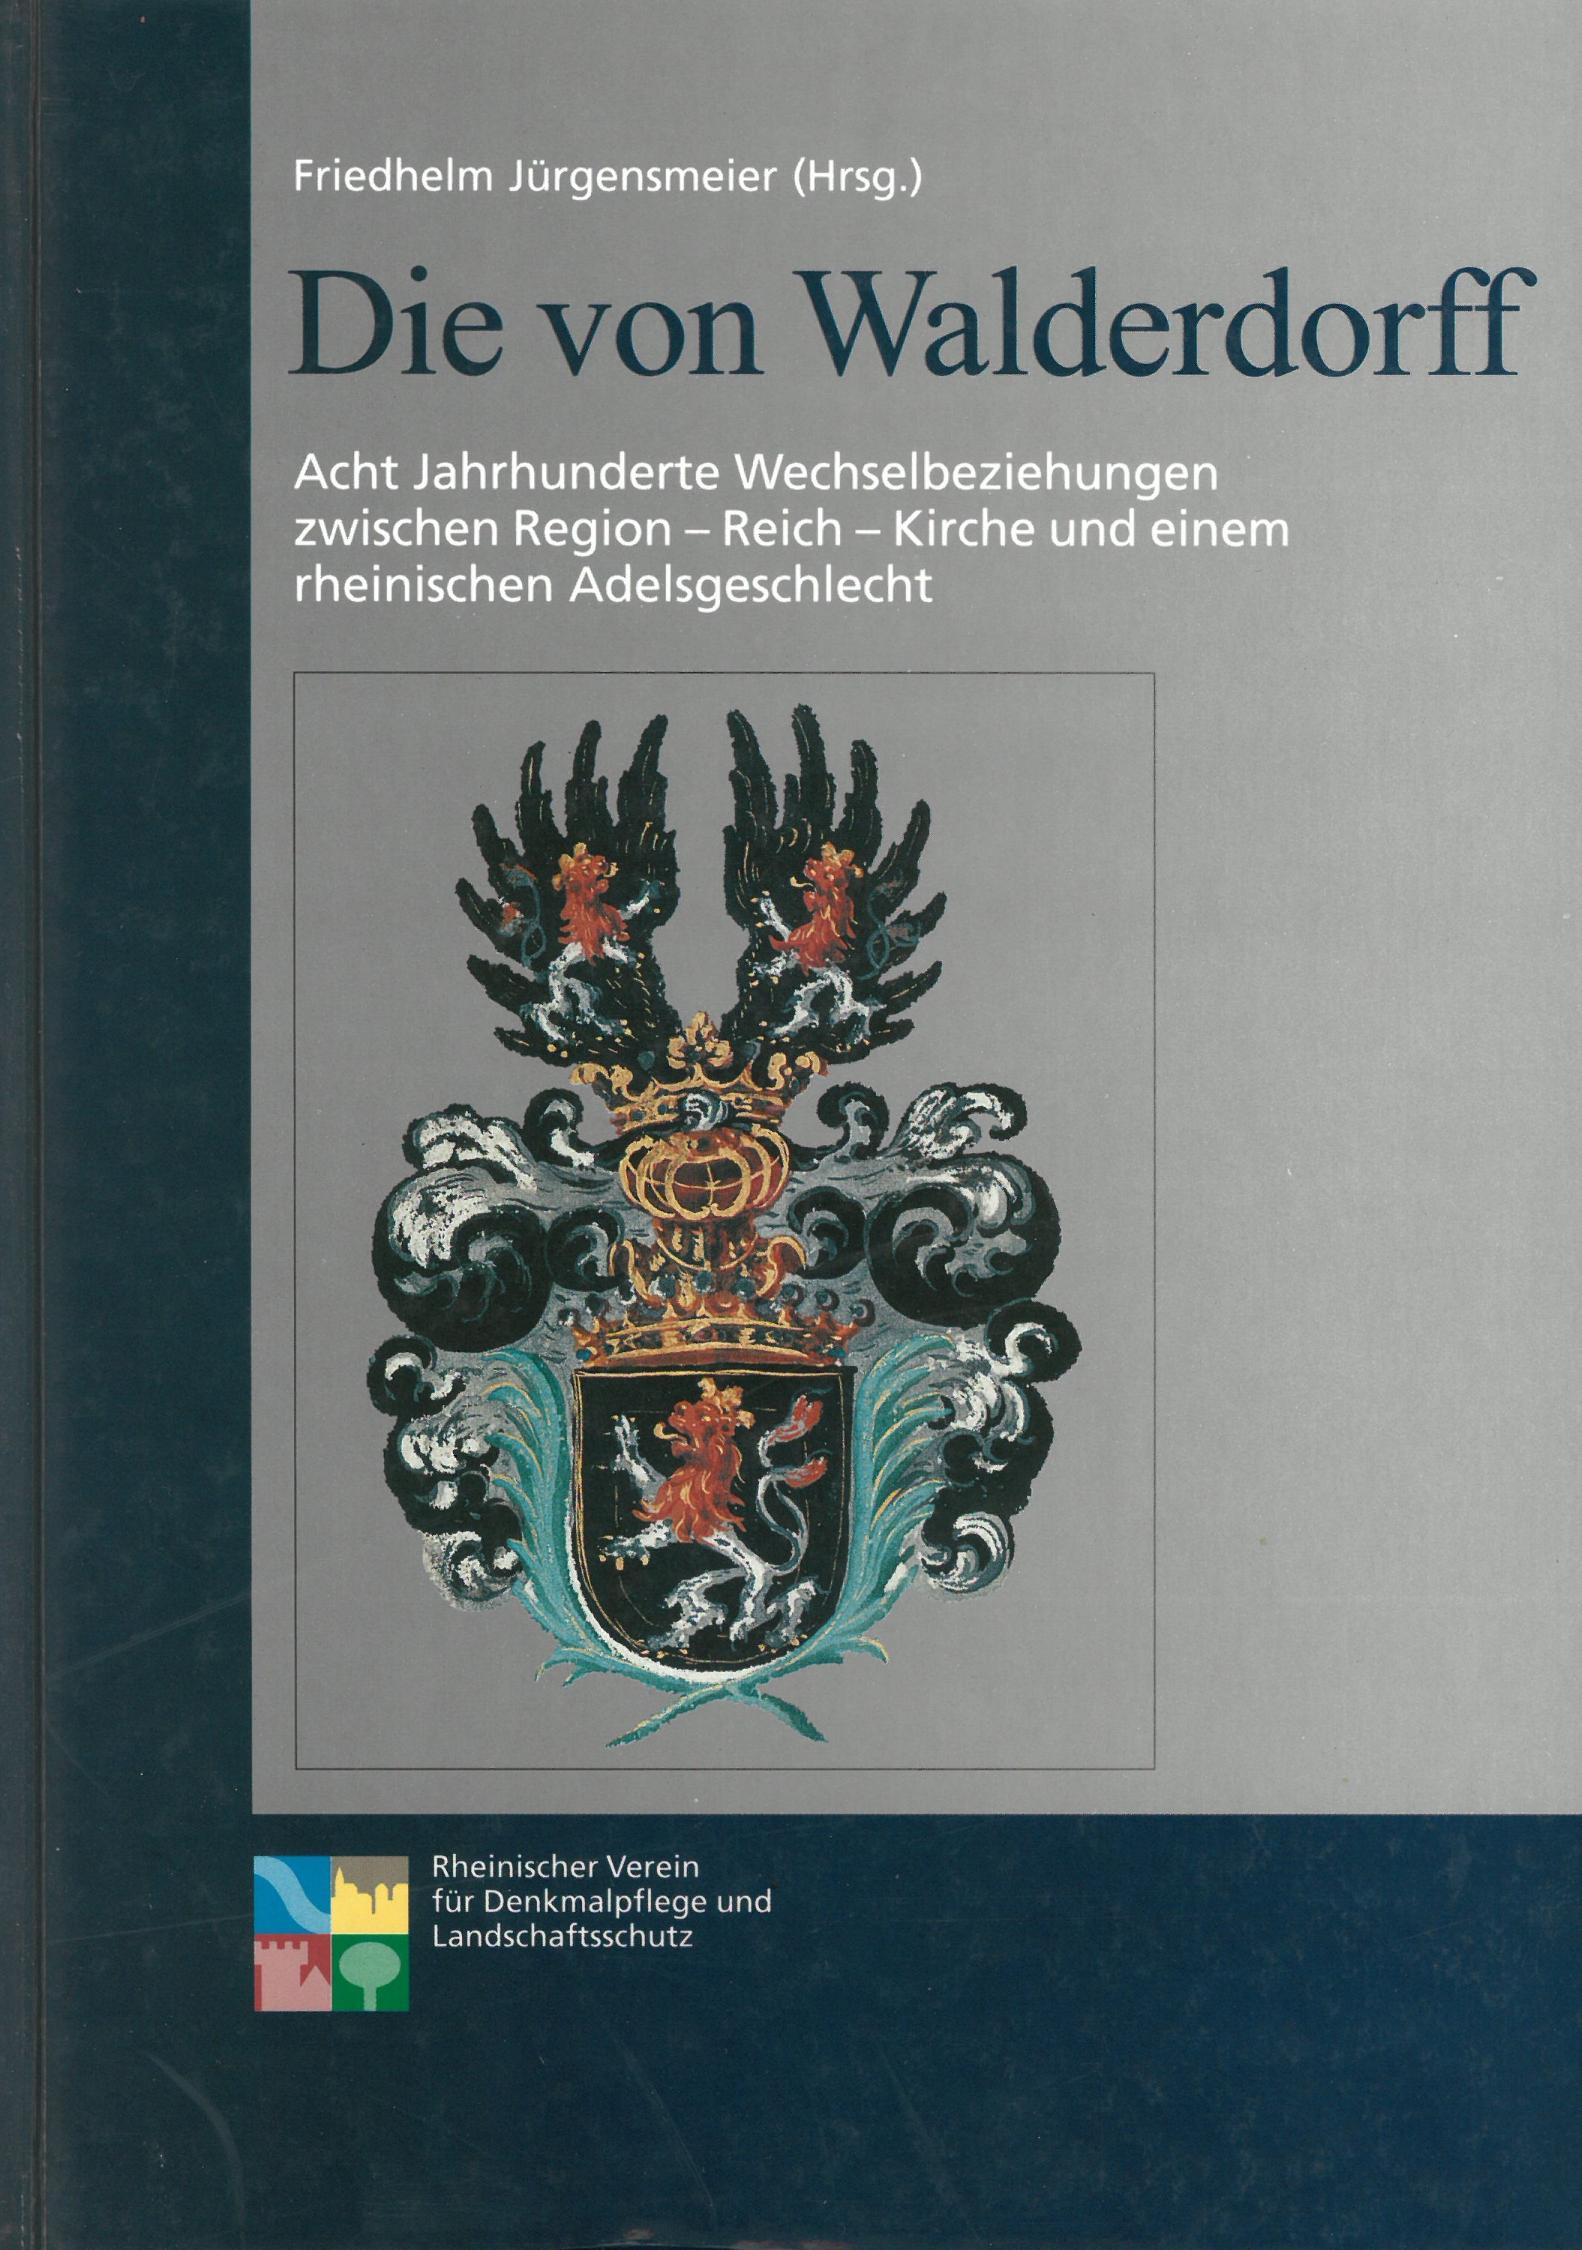 Walderdorff (c) Verlag des Rheinischen Vereins für Denkmalpflege und Landschaftsschutz / IMKG